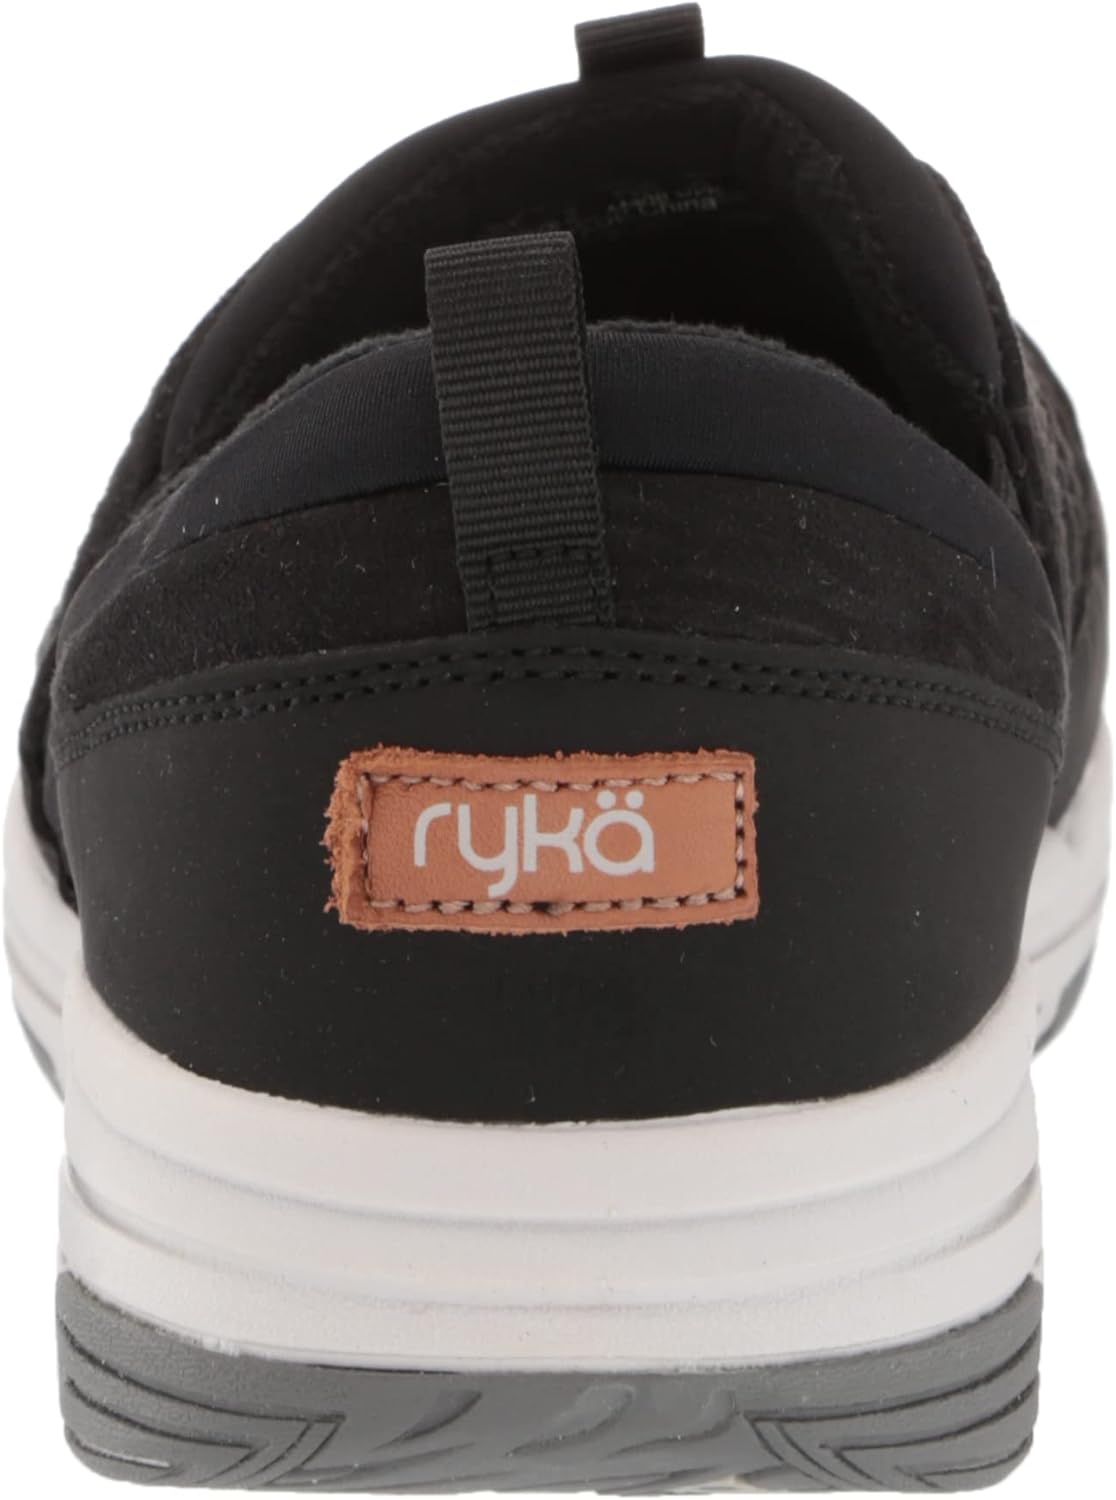 Ryka Adel 2 Women's Athletic Sneakers